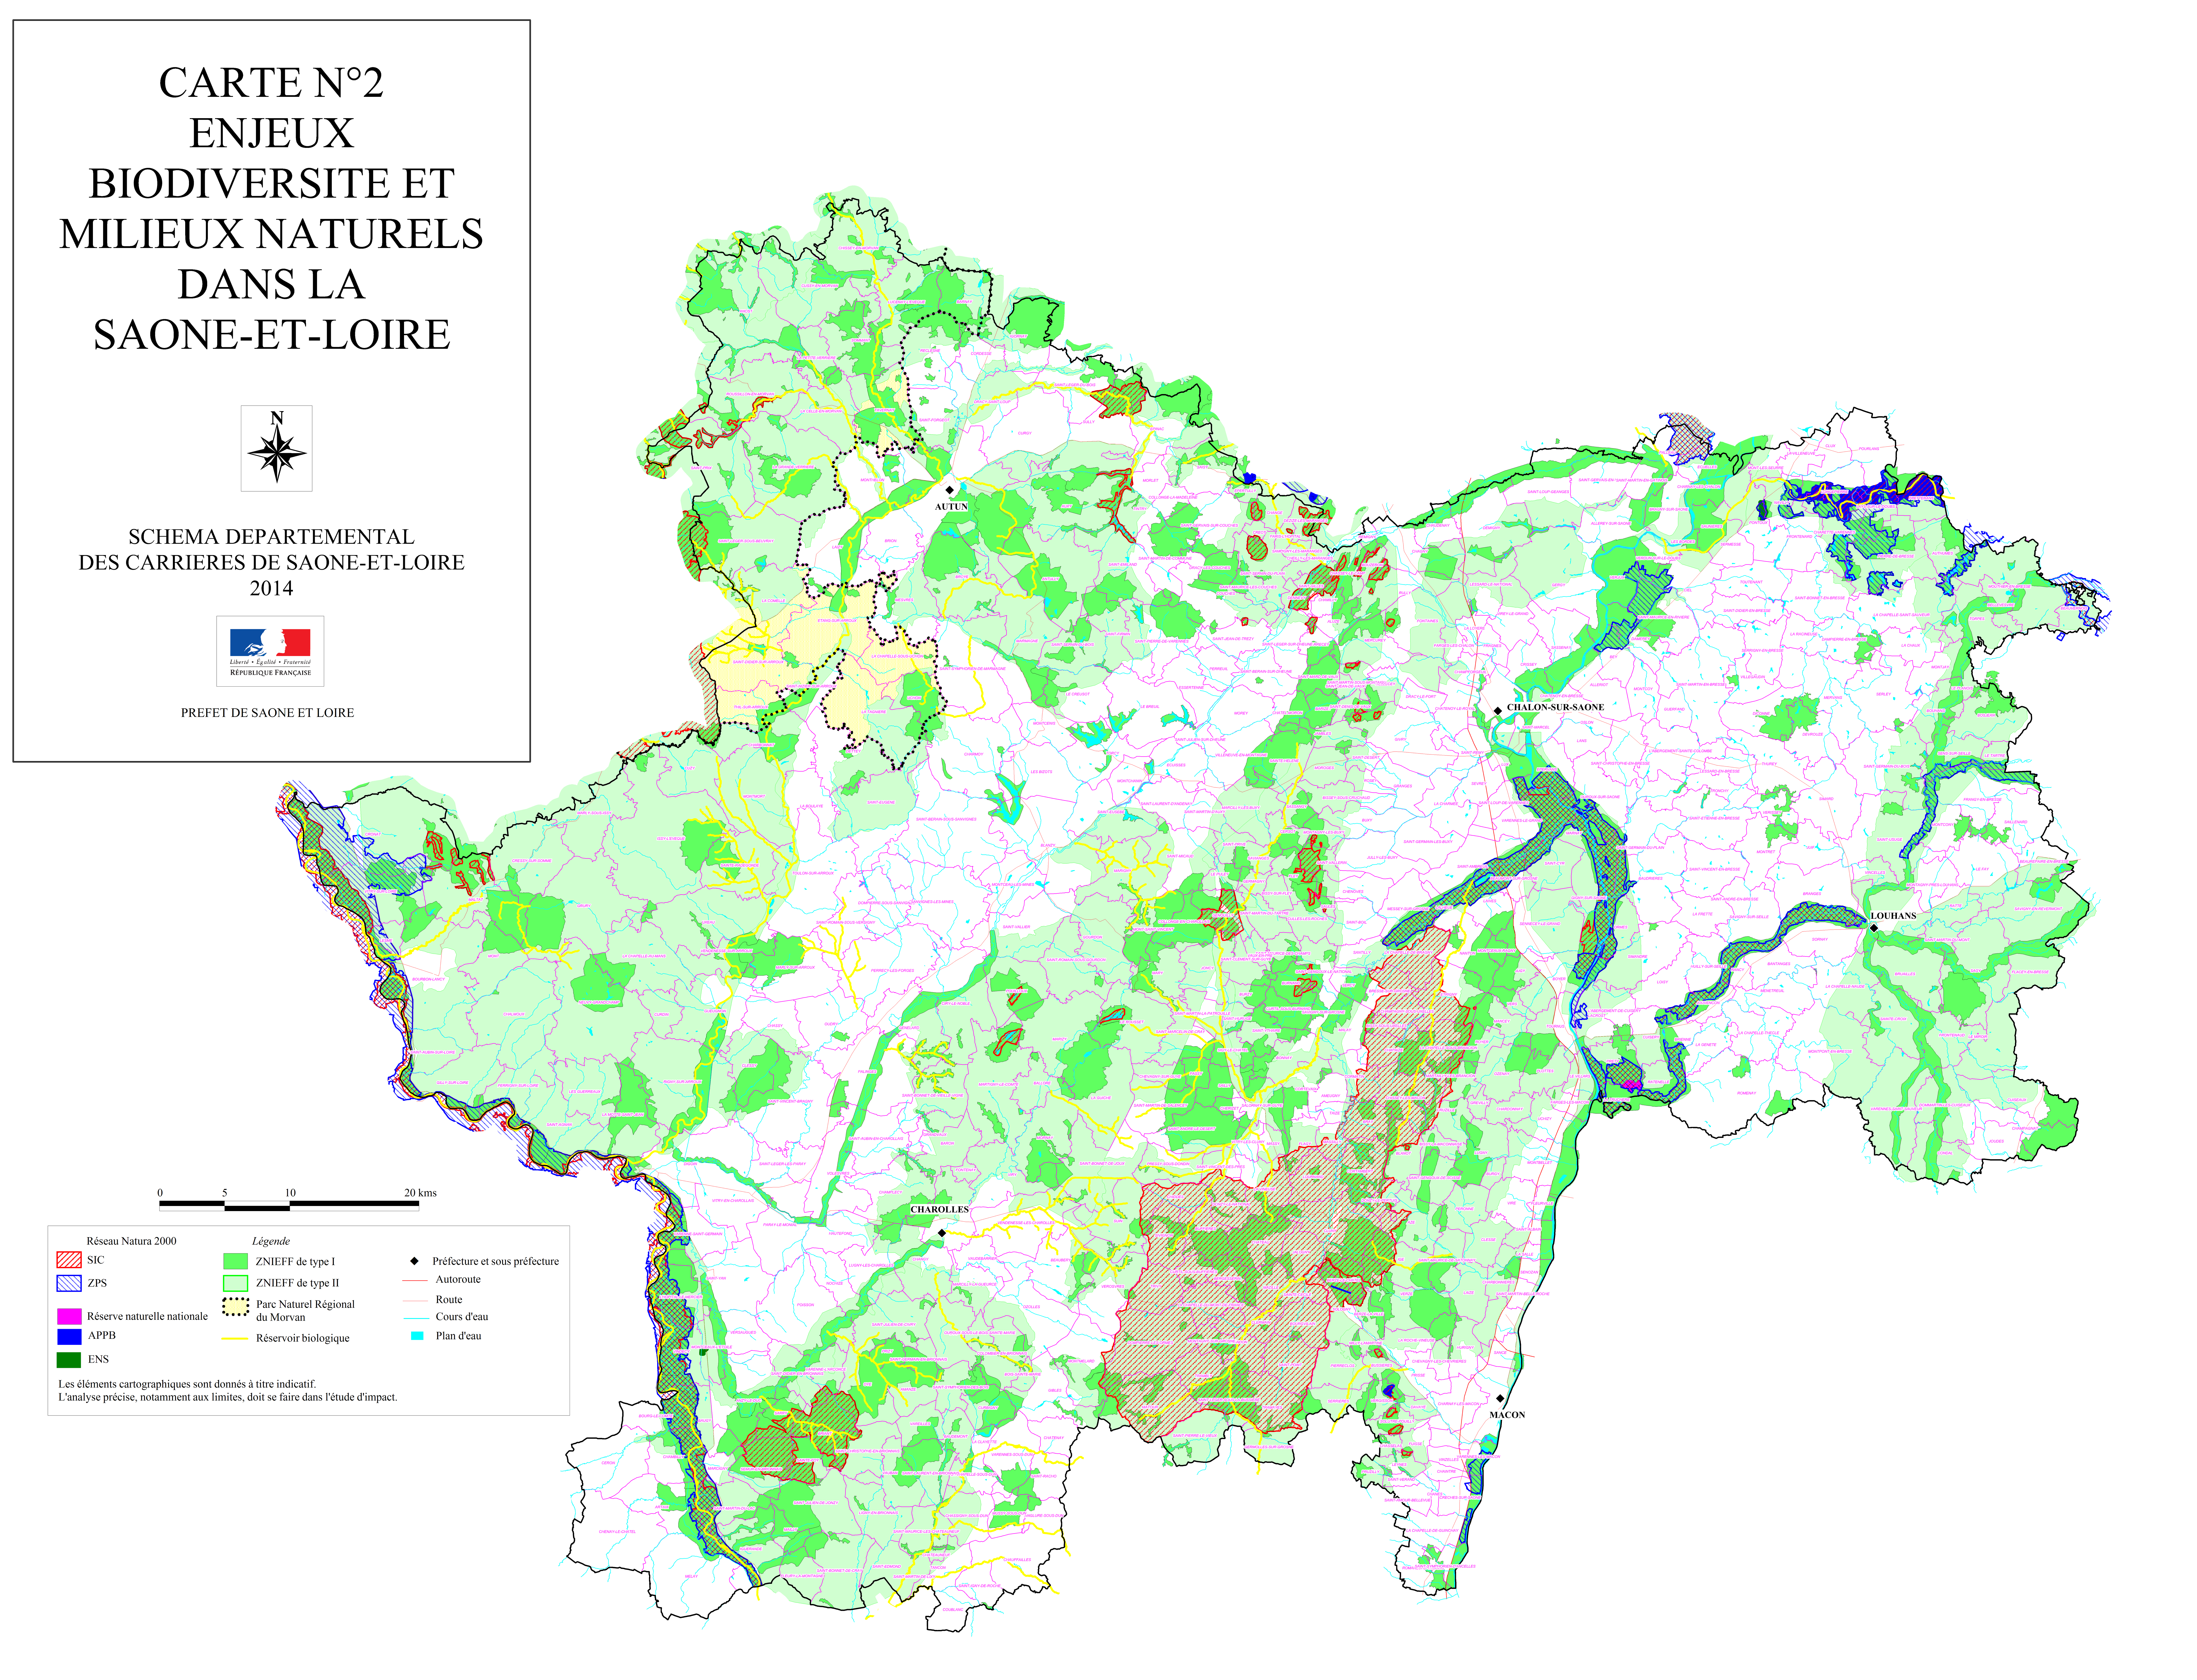 Carte n°2 : Enjeux Biodiversité et milieux naturels en grand format (nouvelle fenêtre)